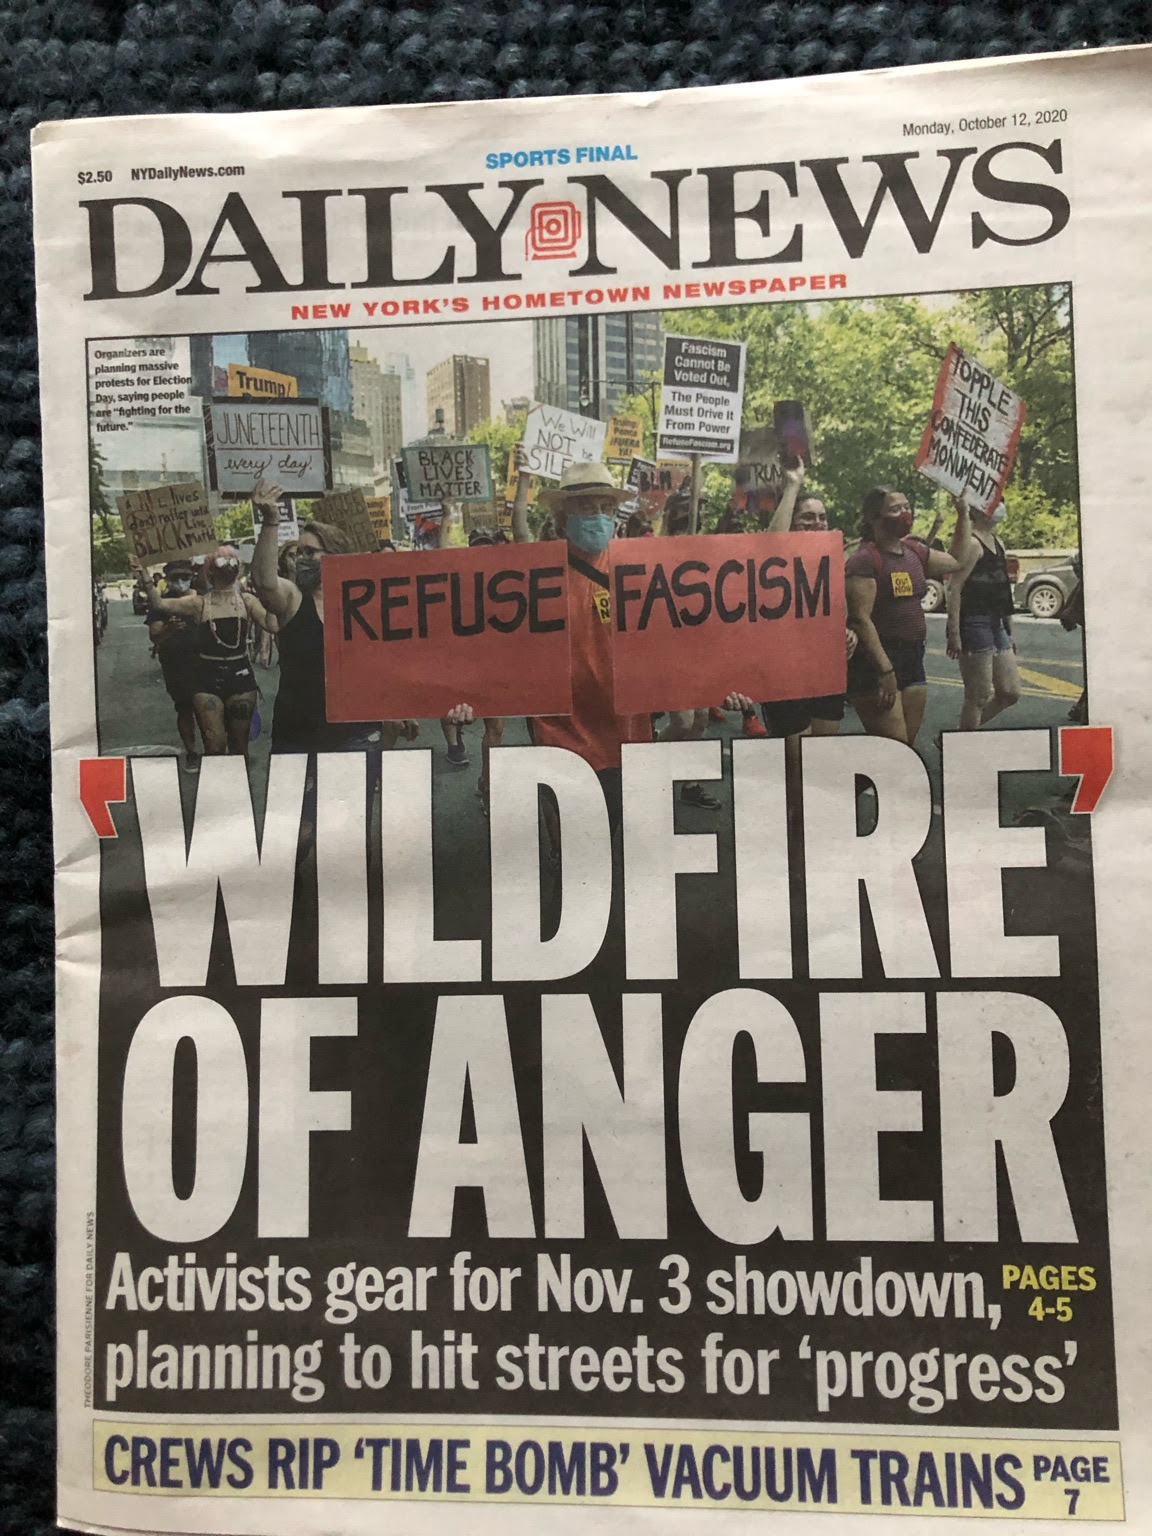 NY Daily News